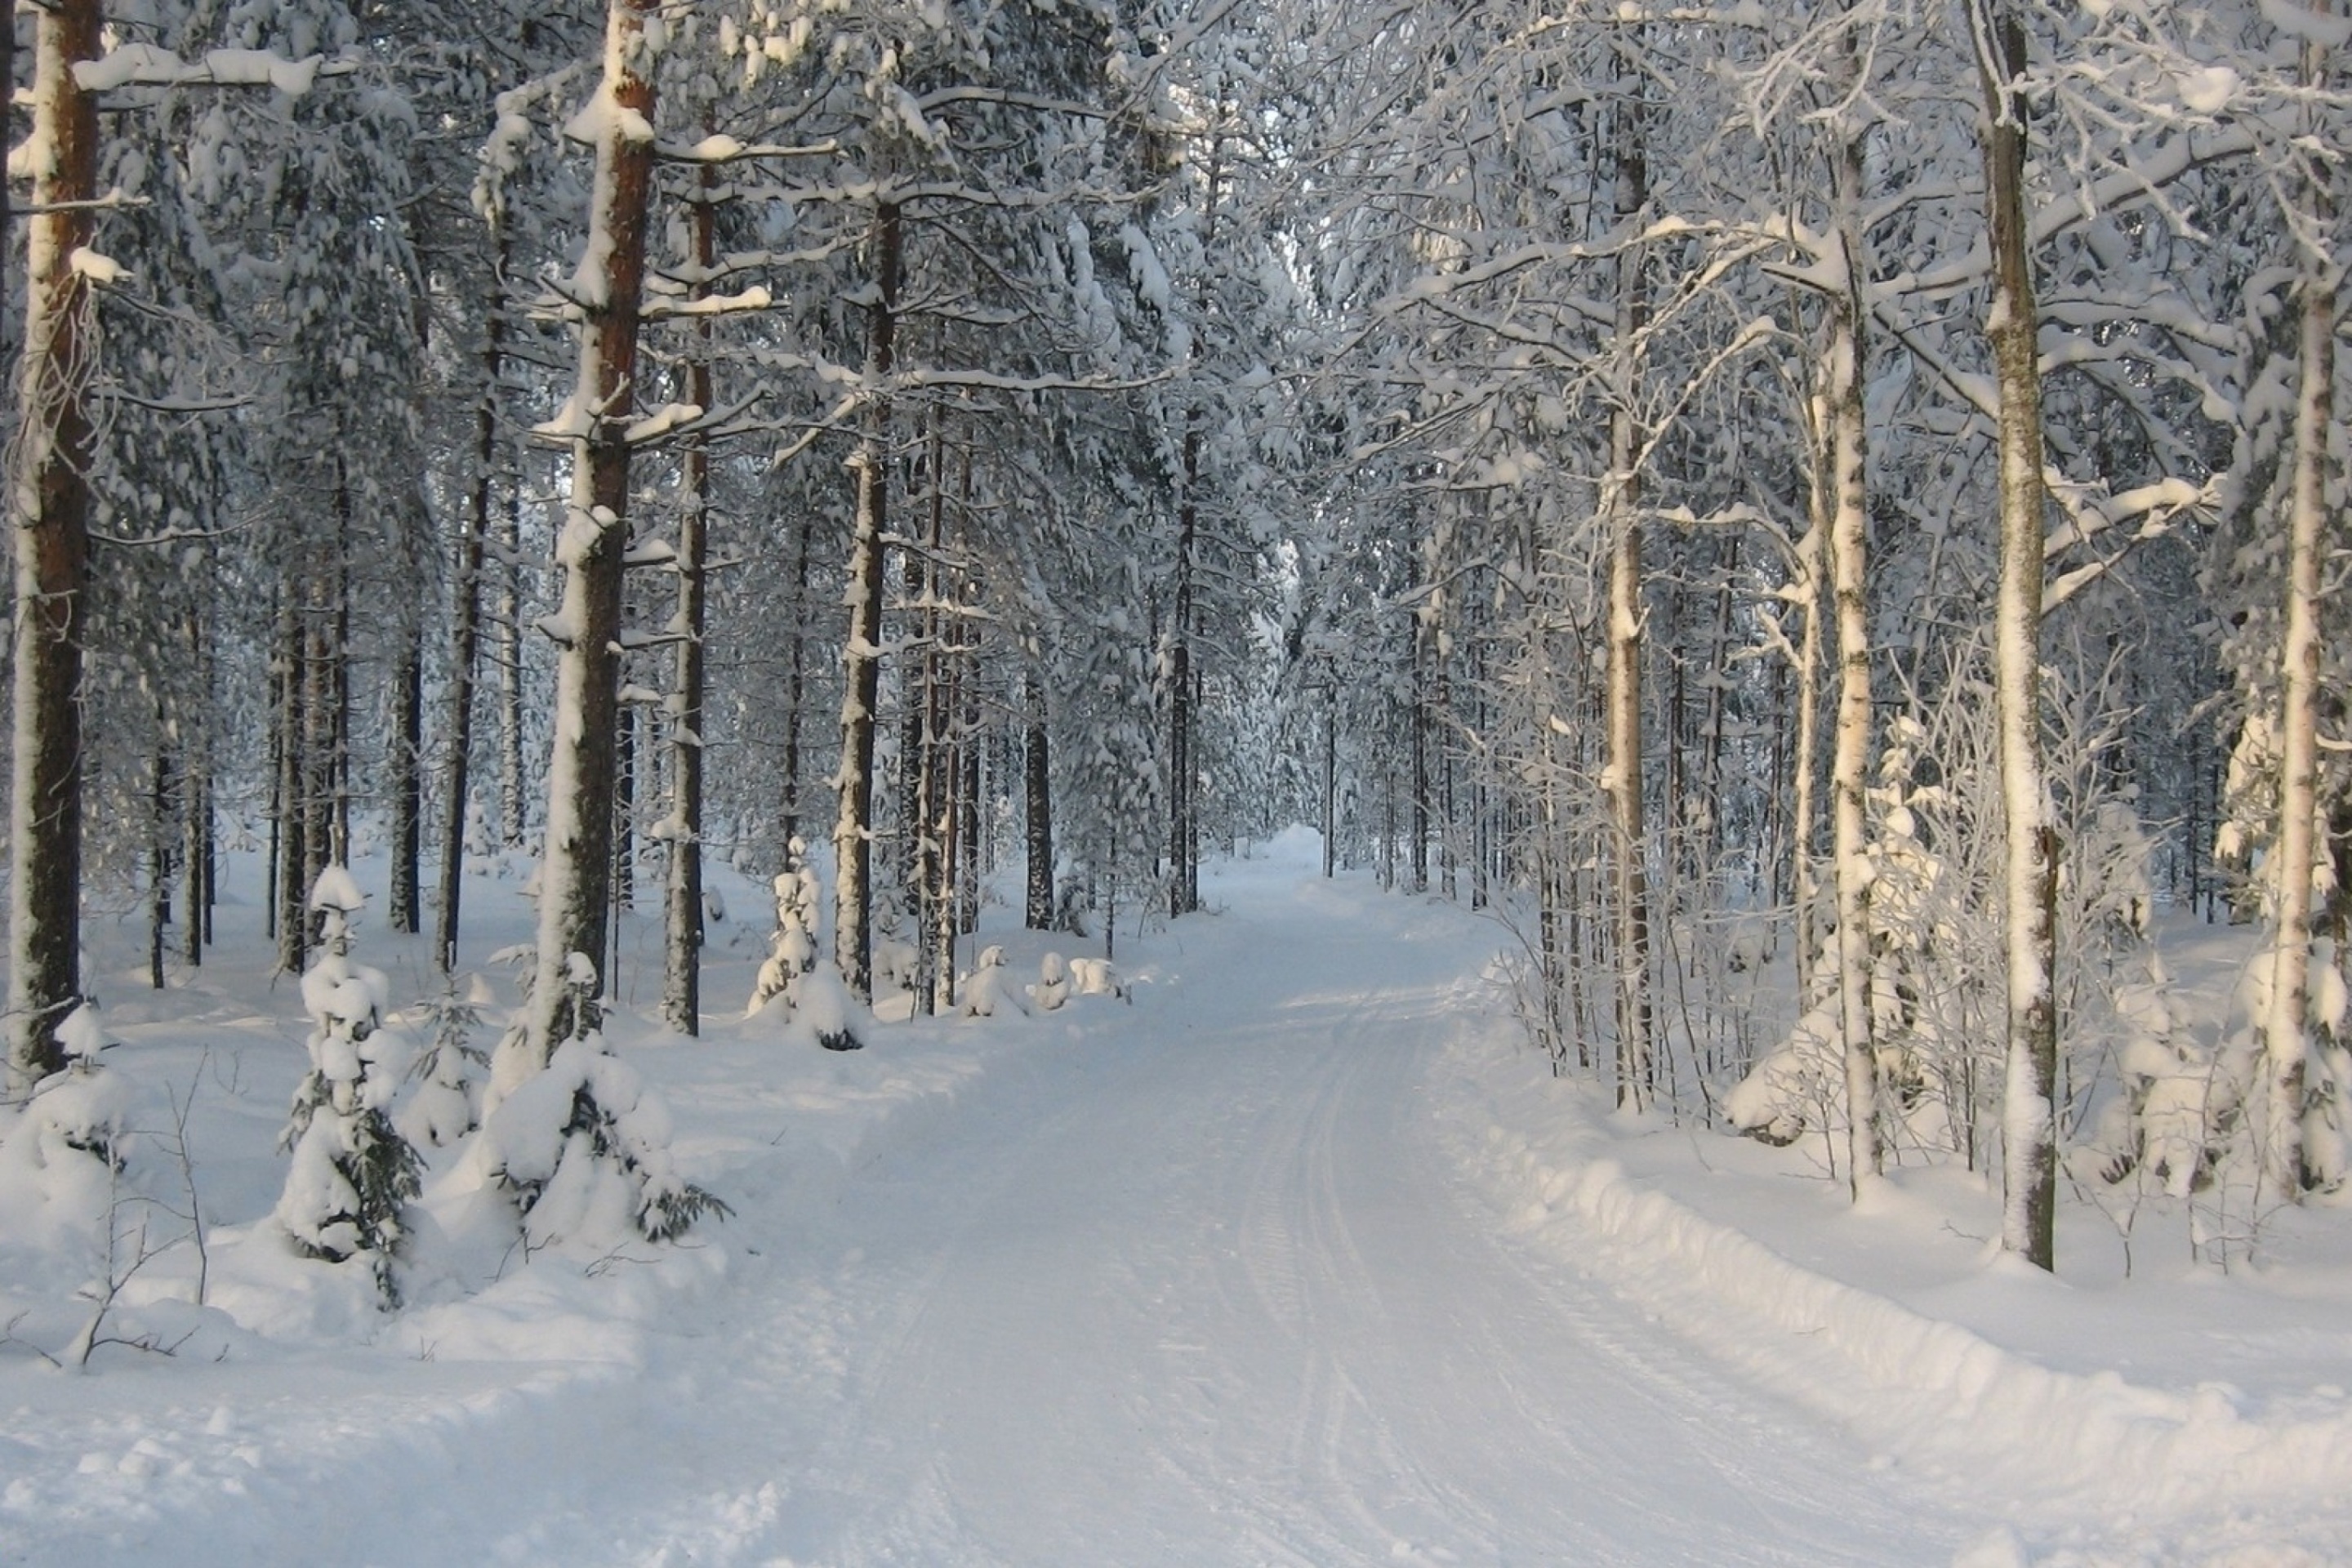 Winter snowy forest screenshot #1 2880x1920